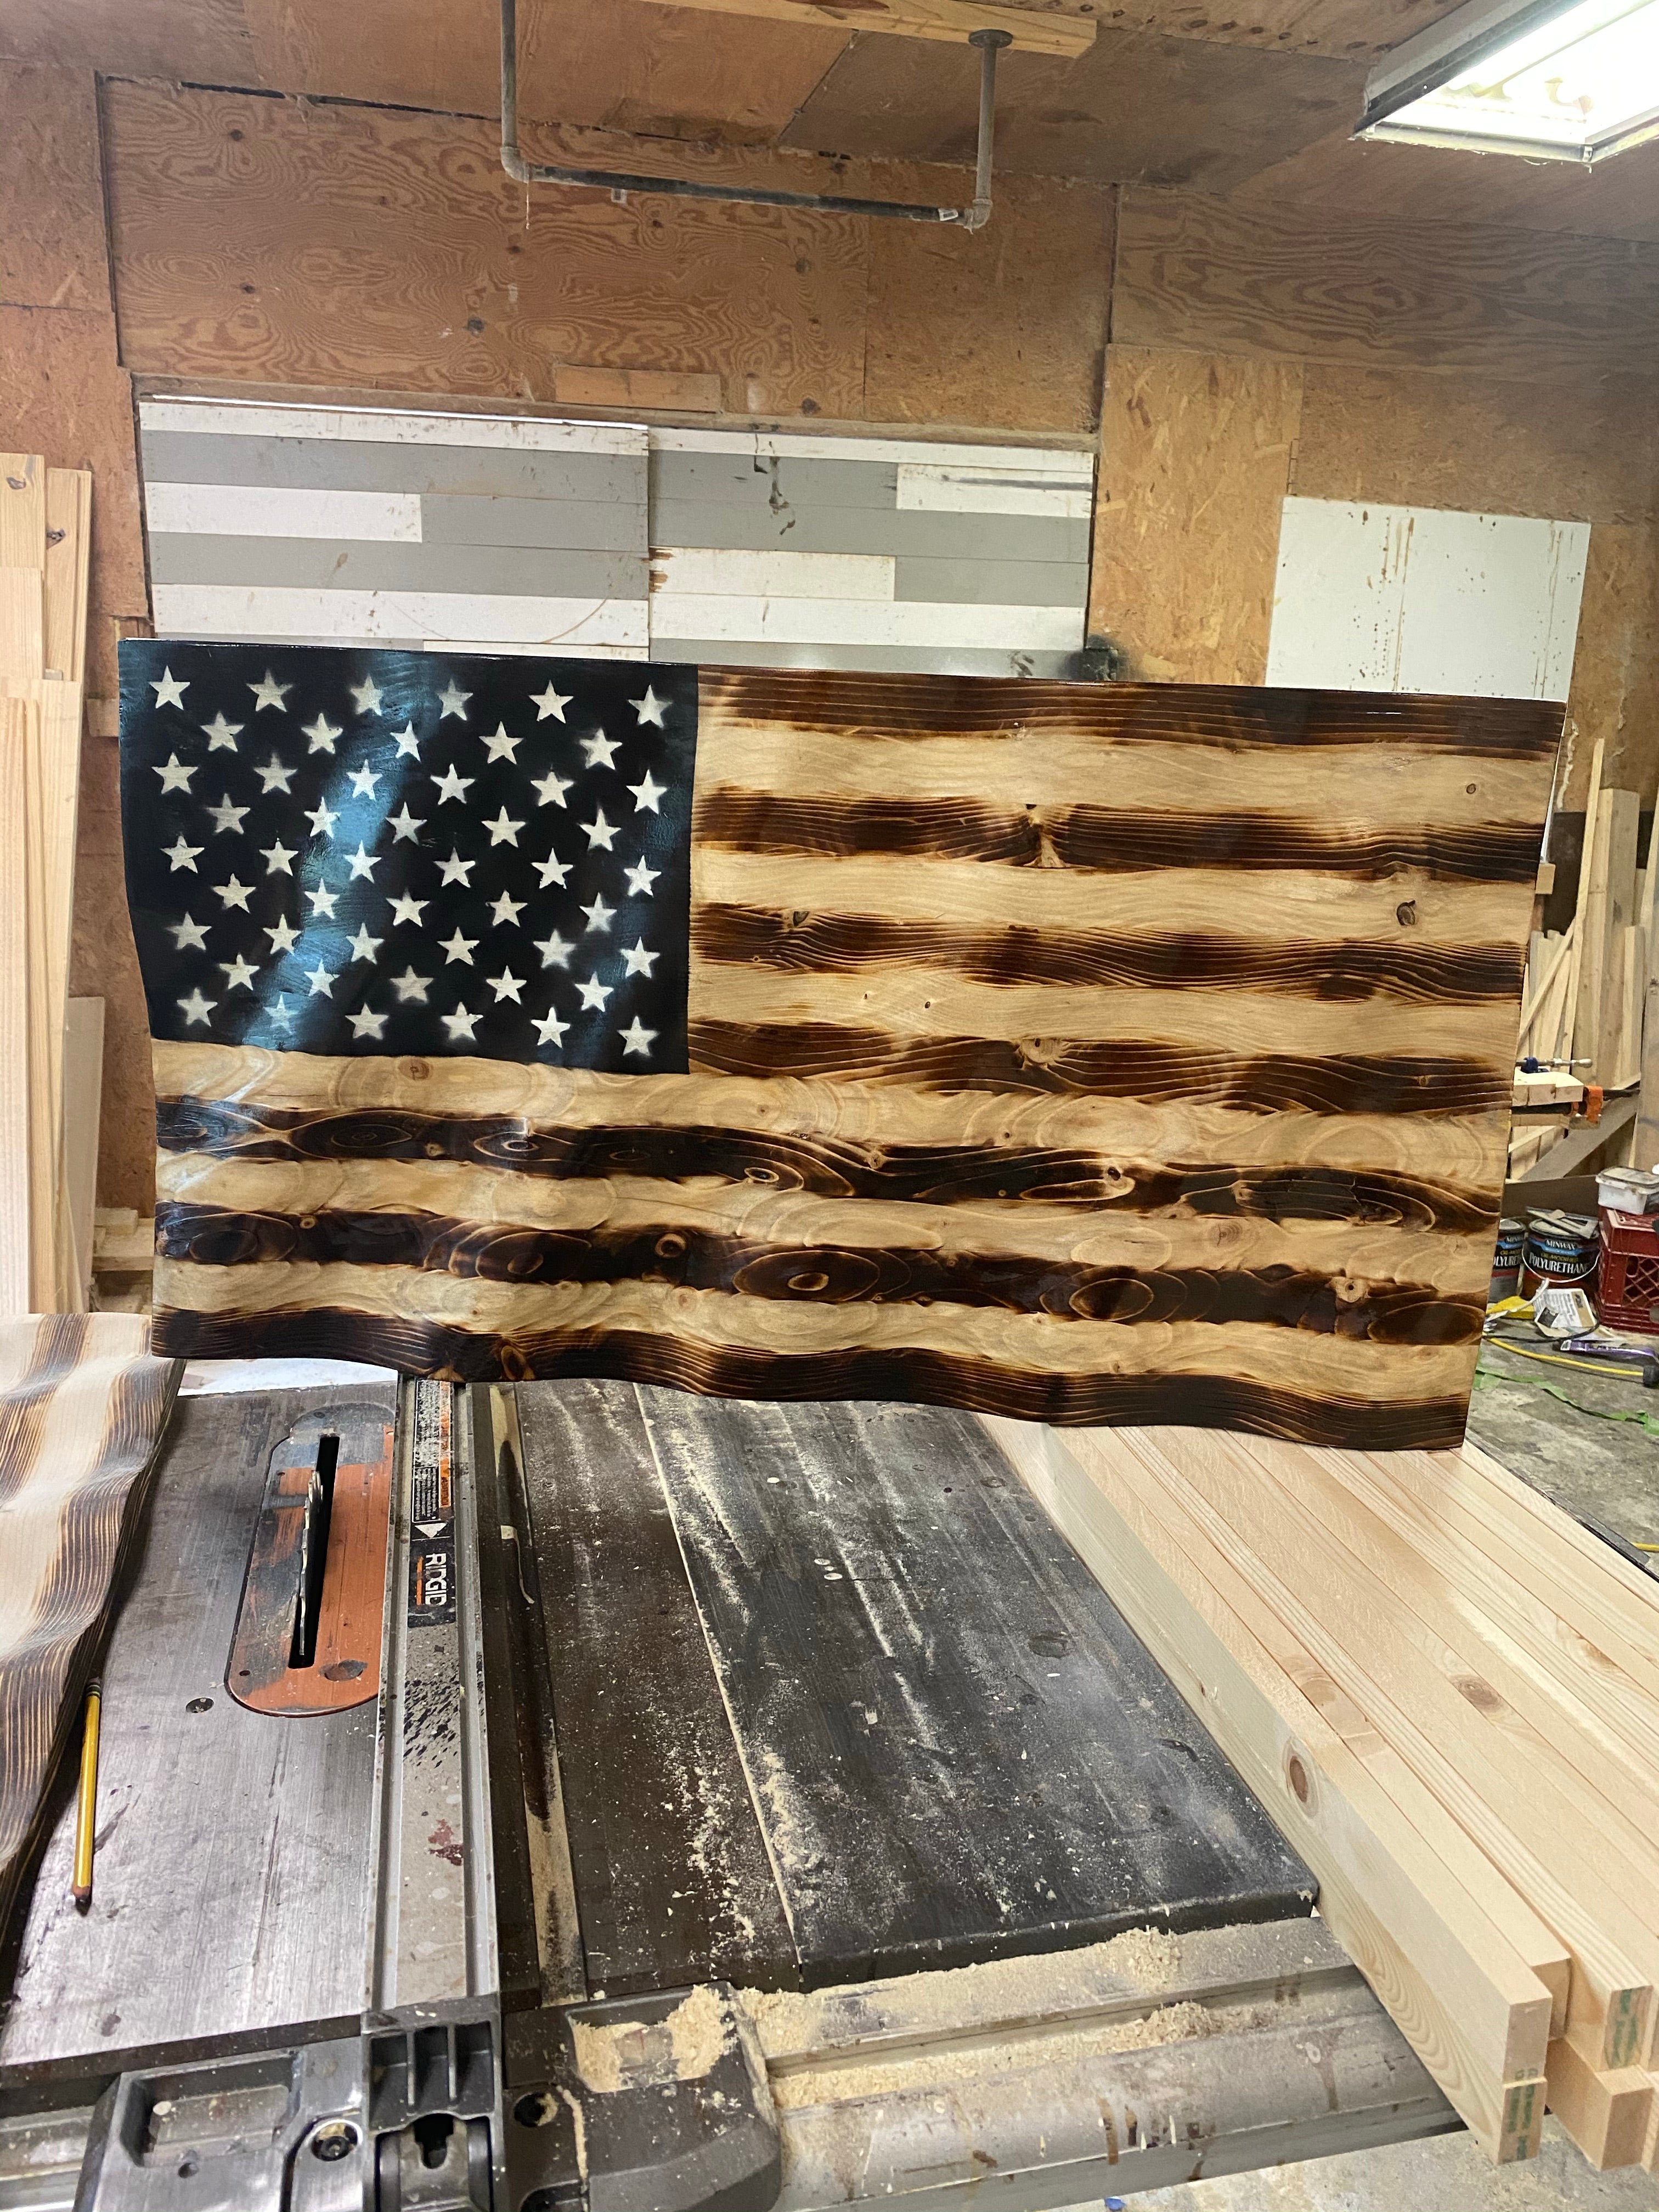 Waving American Flag - Furniture Fair